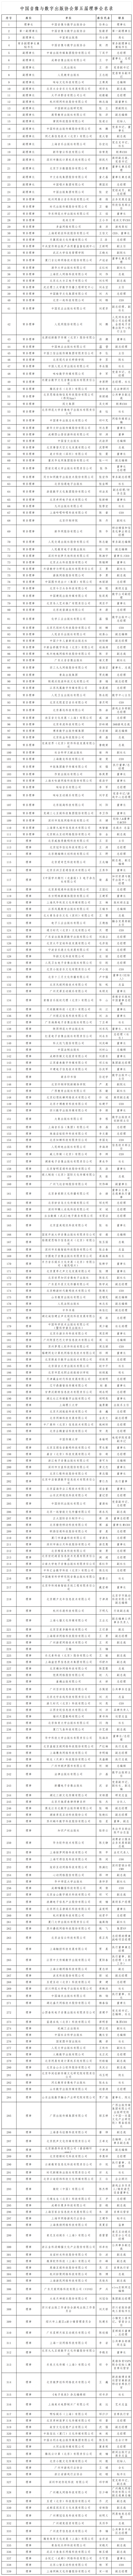 中国音像与数字出版协会第五届理事会名录_Sheet1(3).png